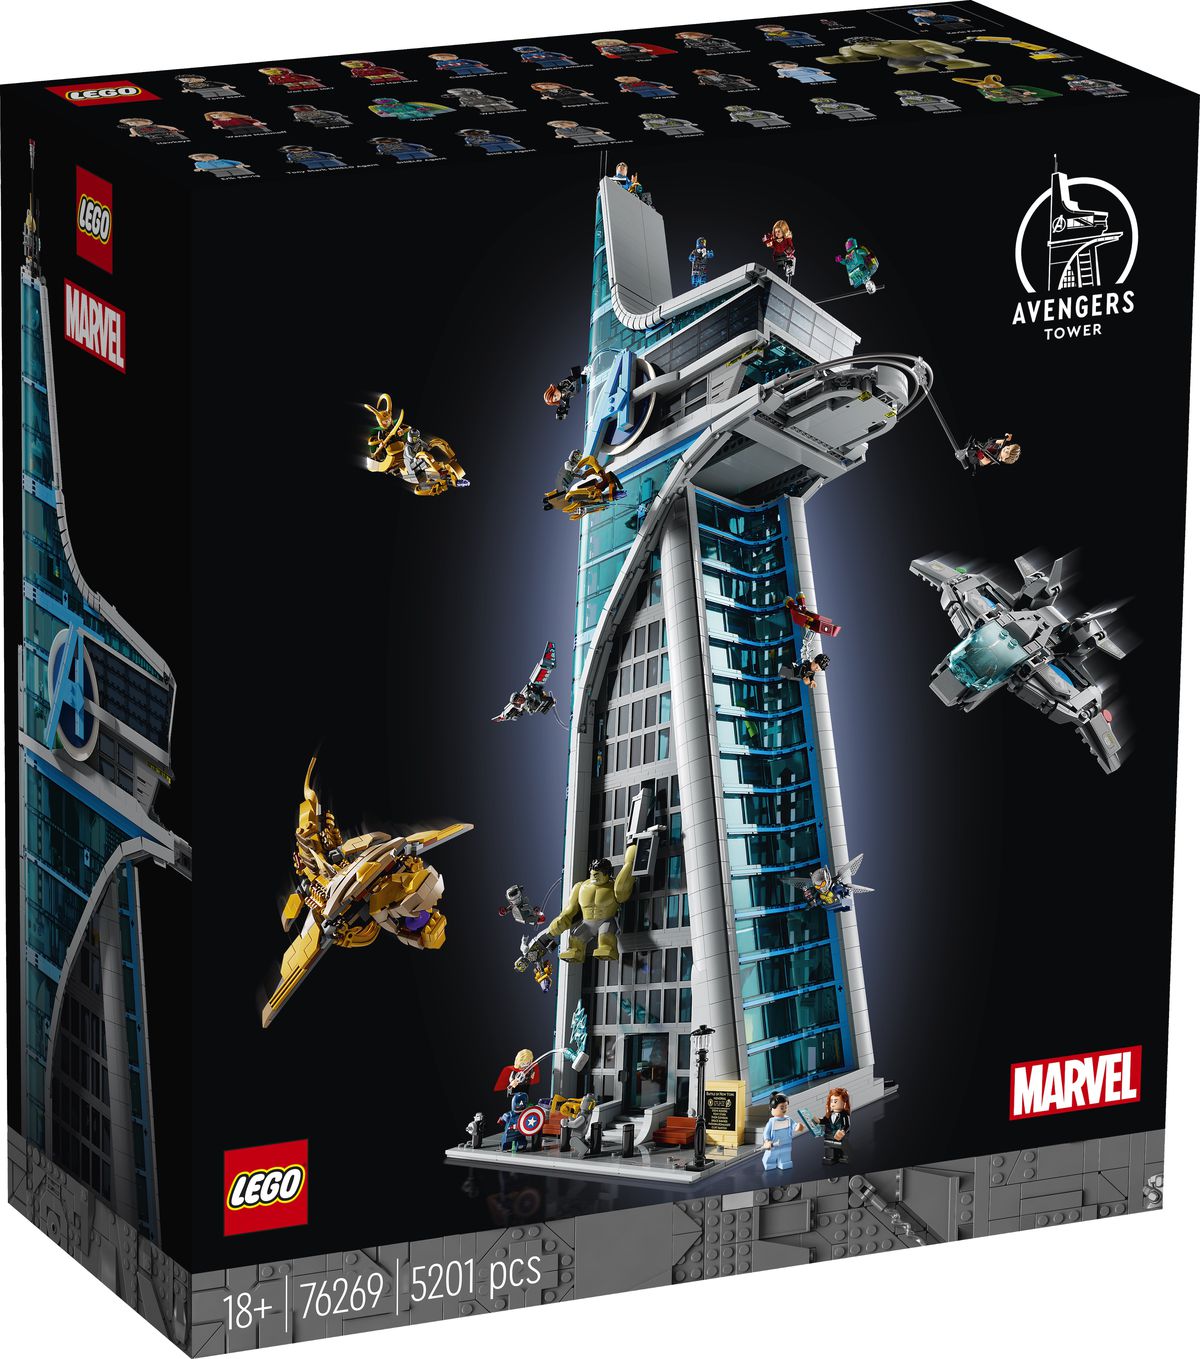 Una foto de caja de Lego Avengers Tower, que muestra varias fuerzas de los Vengadores y Chitauri luchando en el exterior.